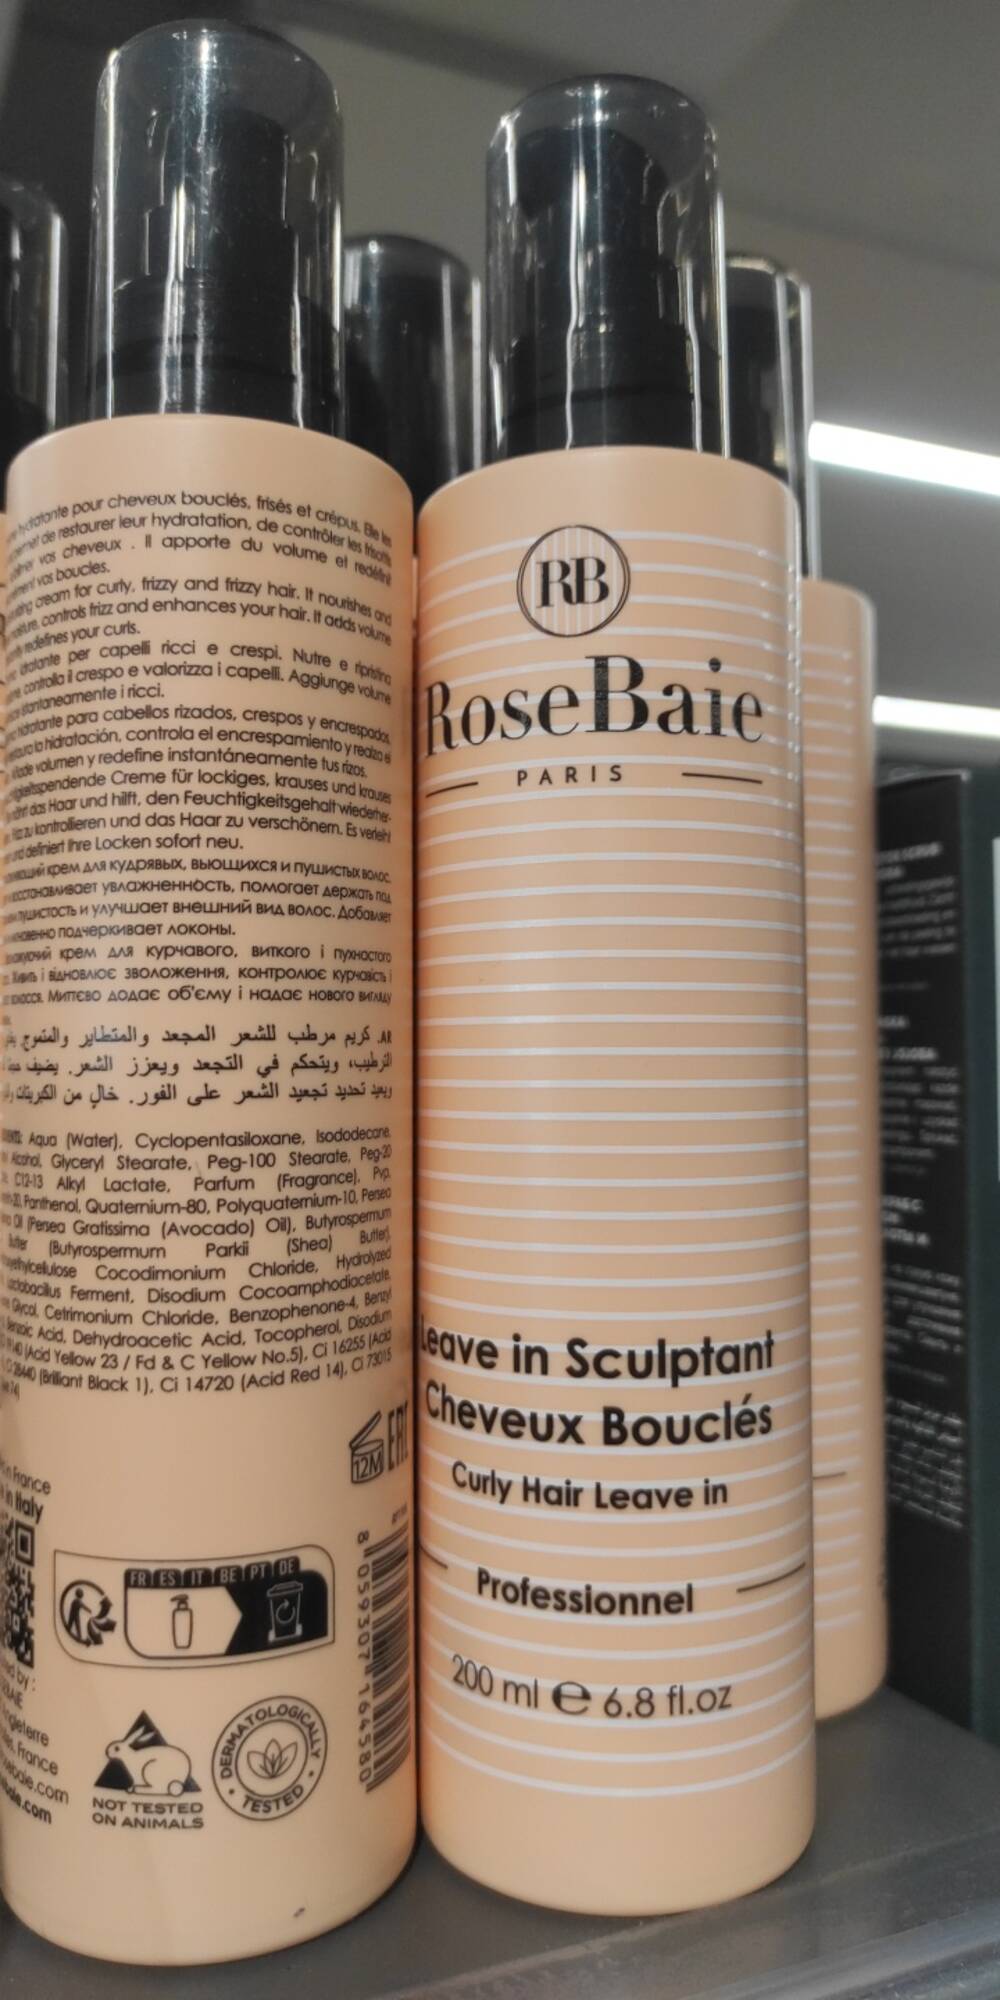 ROSEBAIE - Leave in sculptant cheveux bouclés 